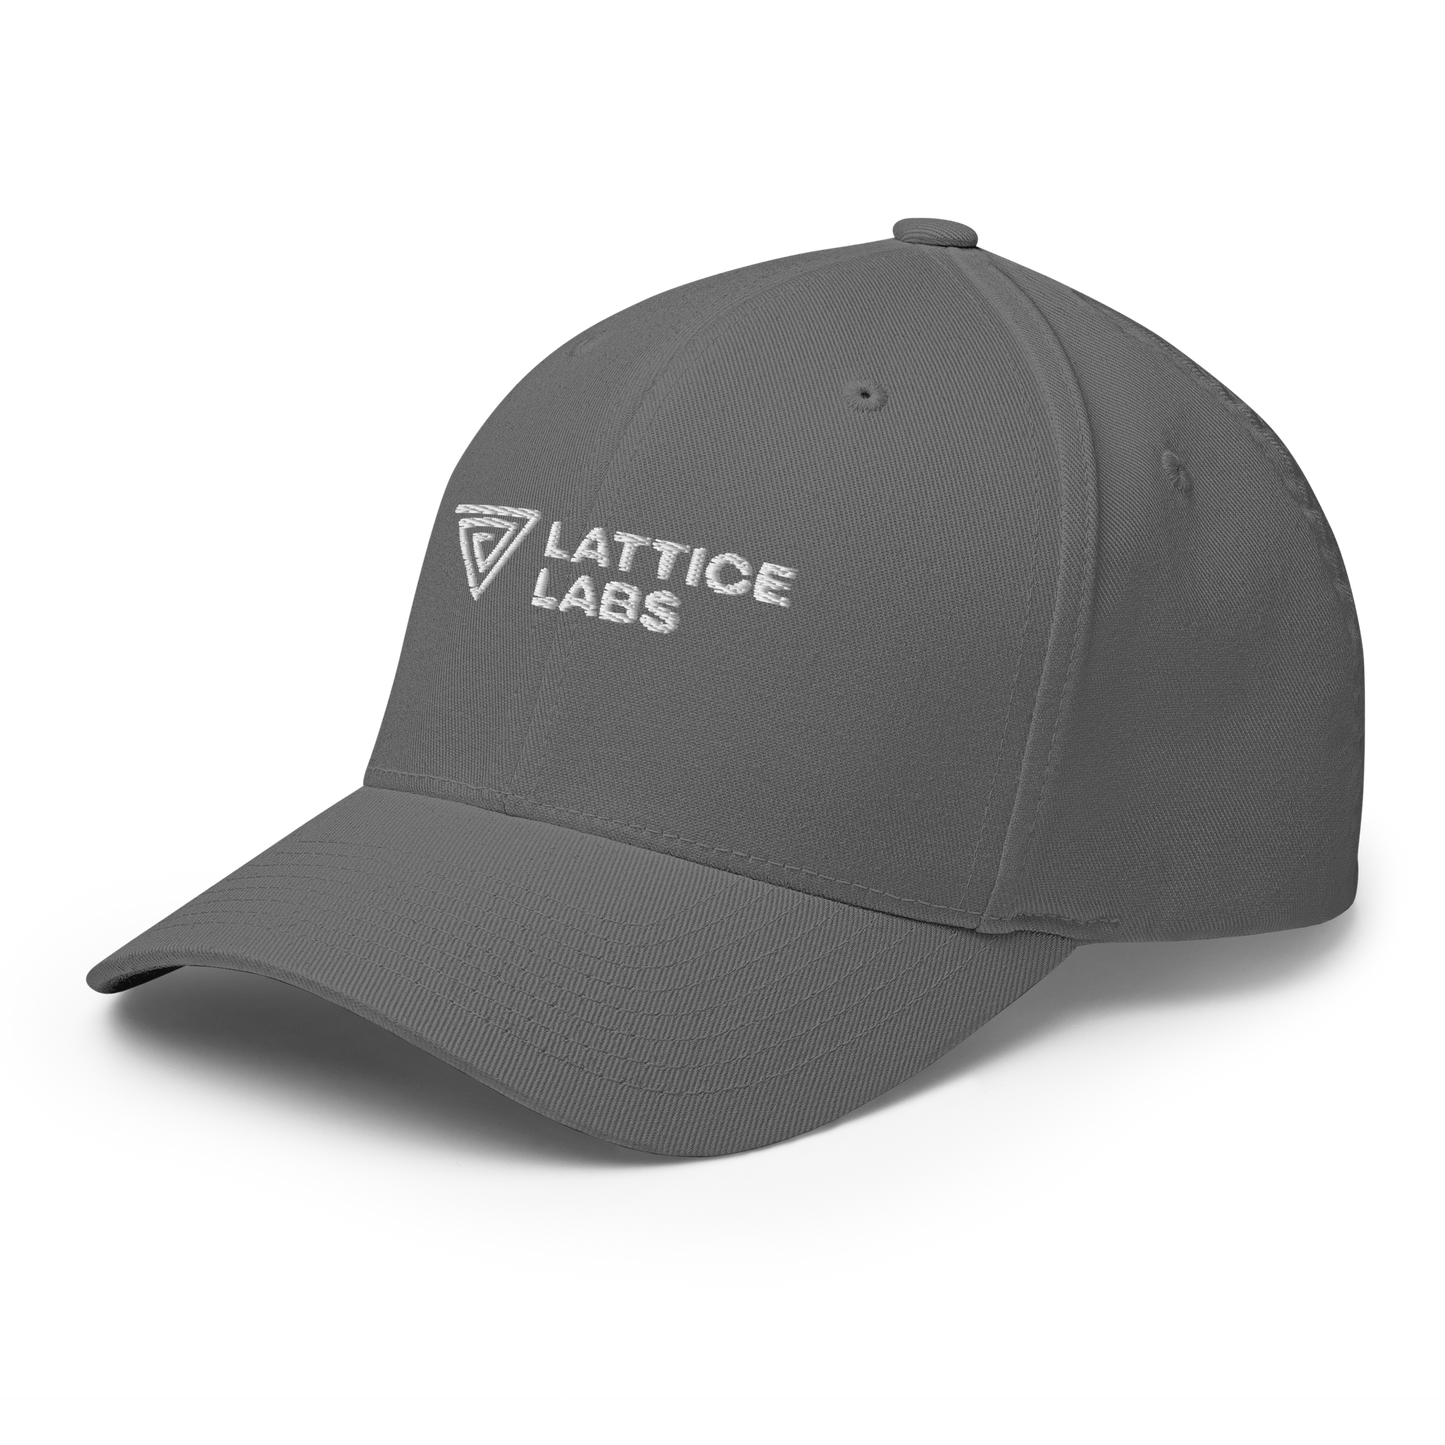 Lattice Labs Cap